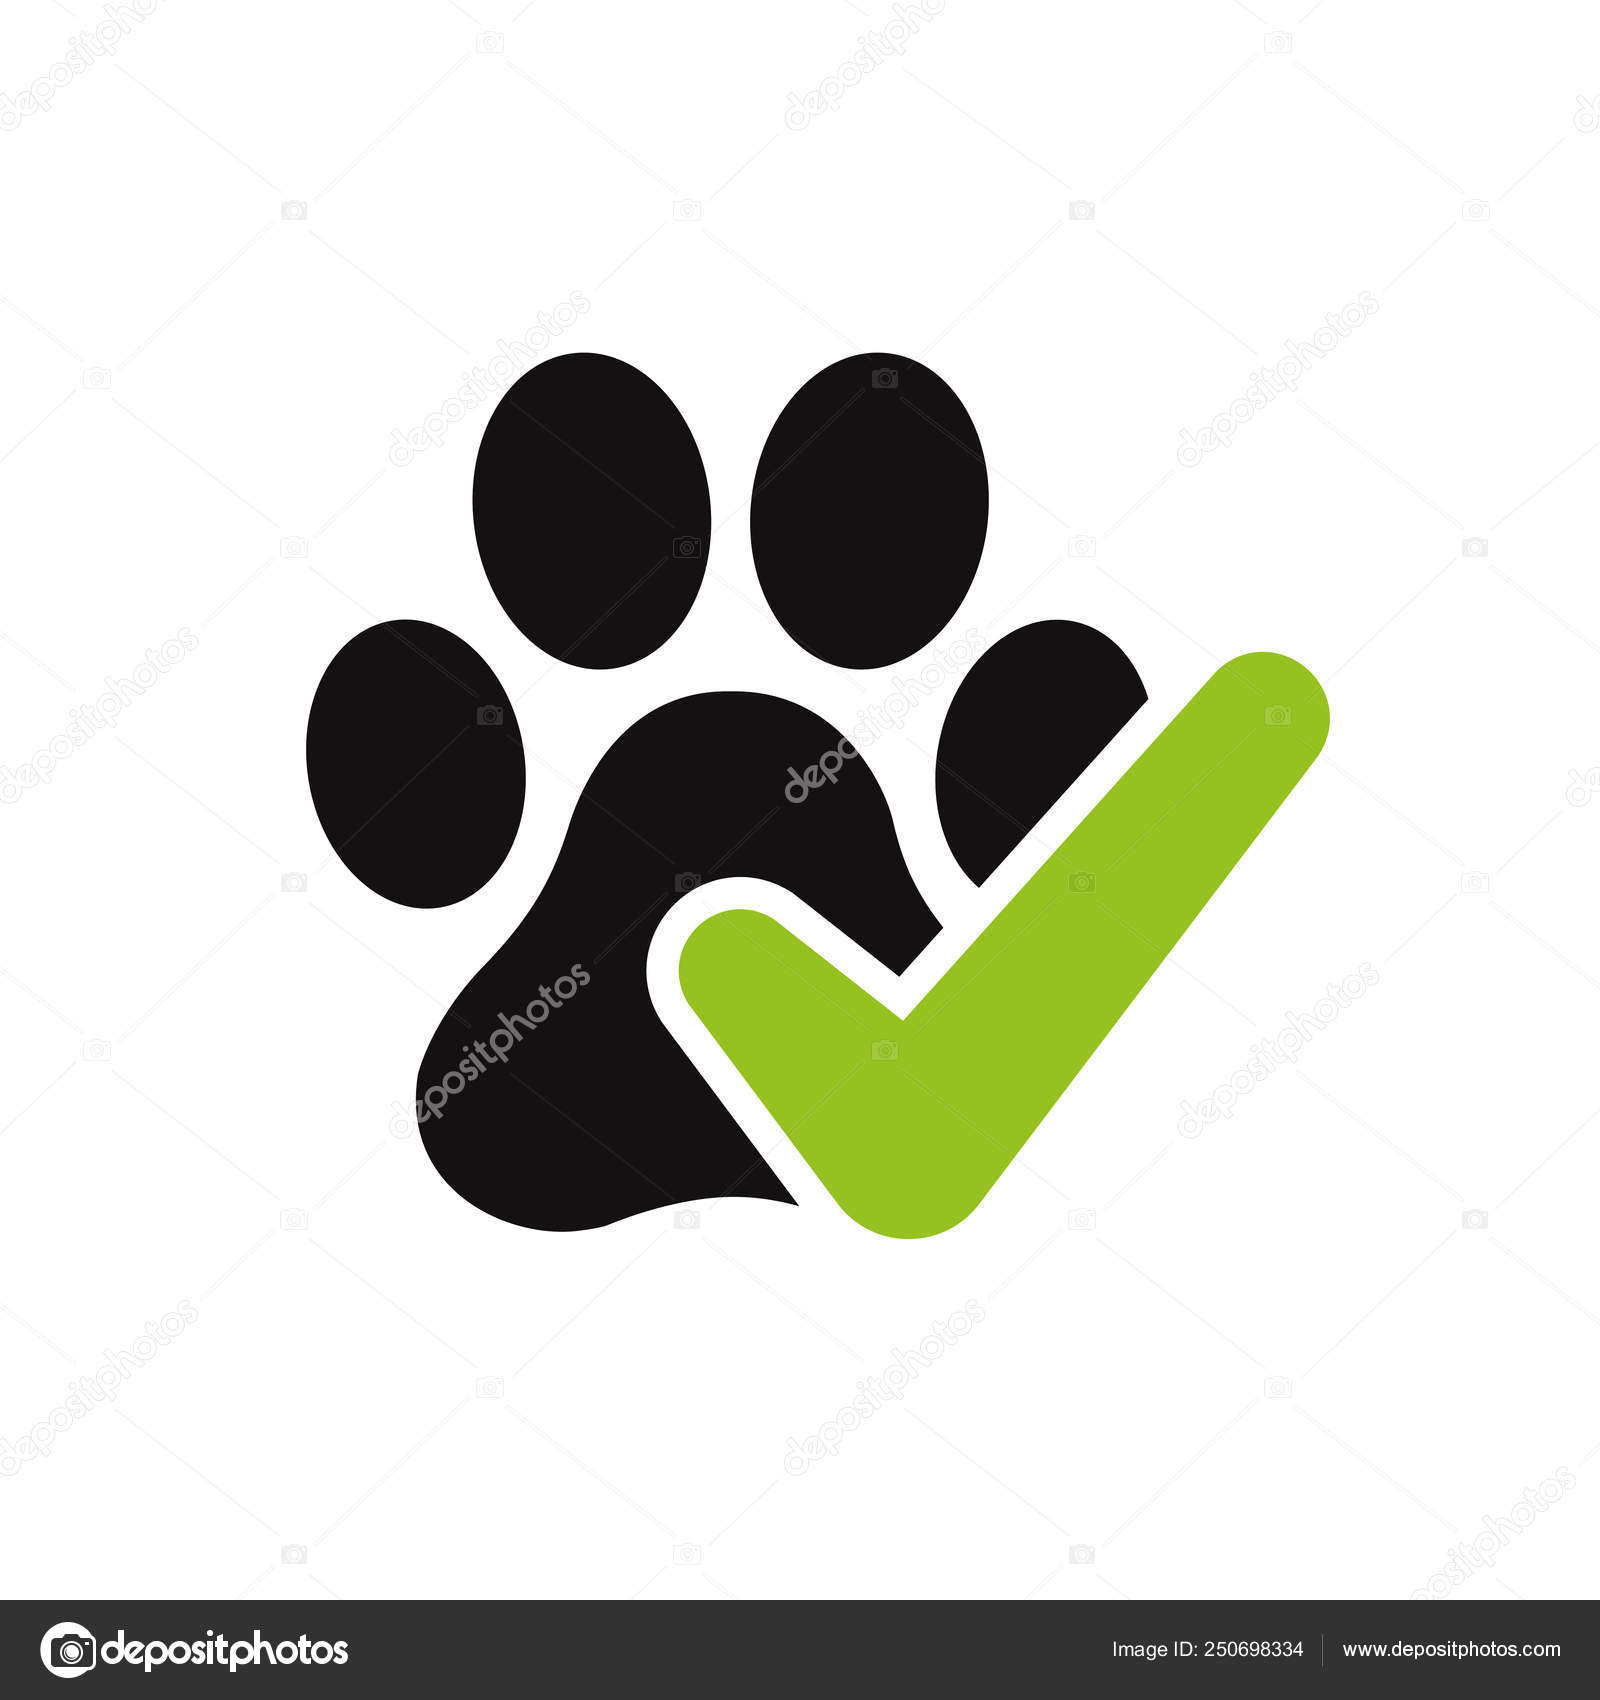 Pet Friendly Pet Friendly Dog Friendly: стоковая векторная графика (без  лицензионных платежей), 2200169583